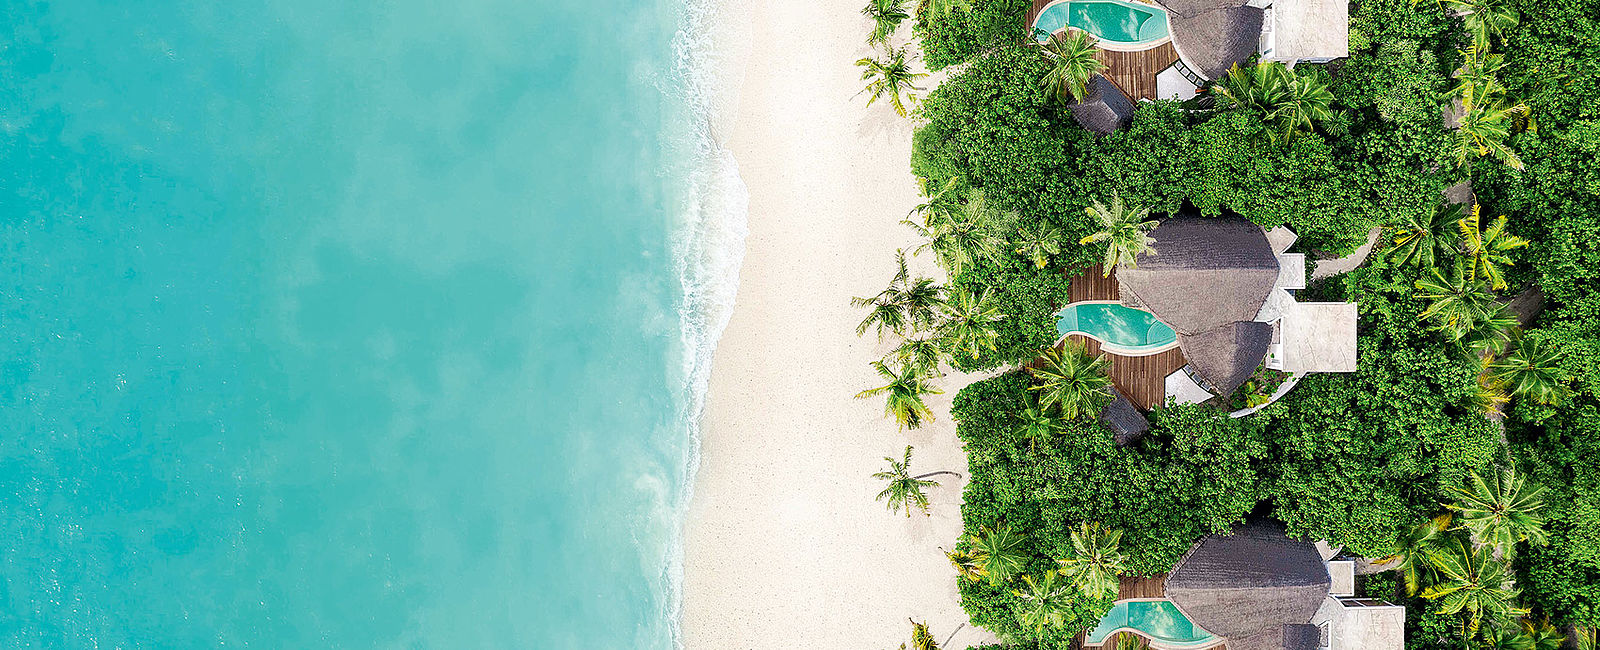 VERY SPECIAL HOTEL
 JW Marriott Maldives Resort & Spa, W Maldives 
 Unvergessliche Momente im Paradies 